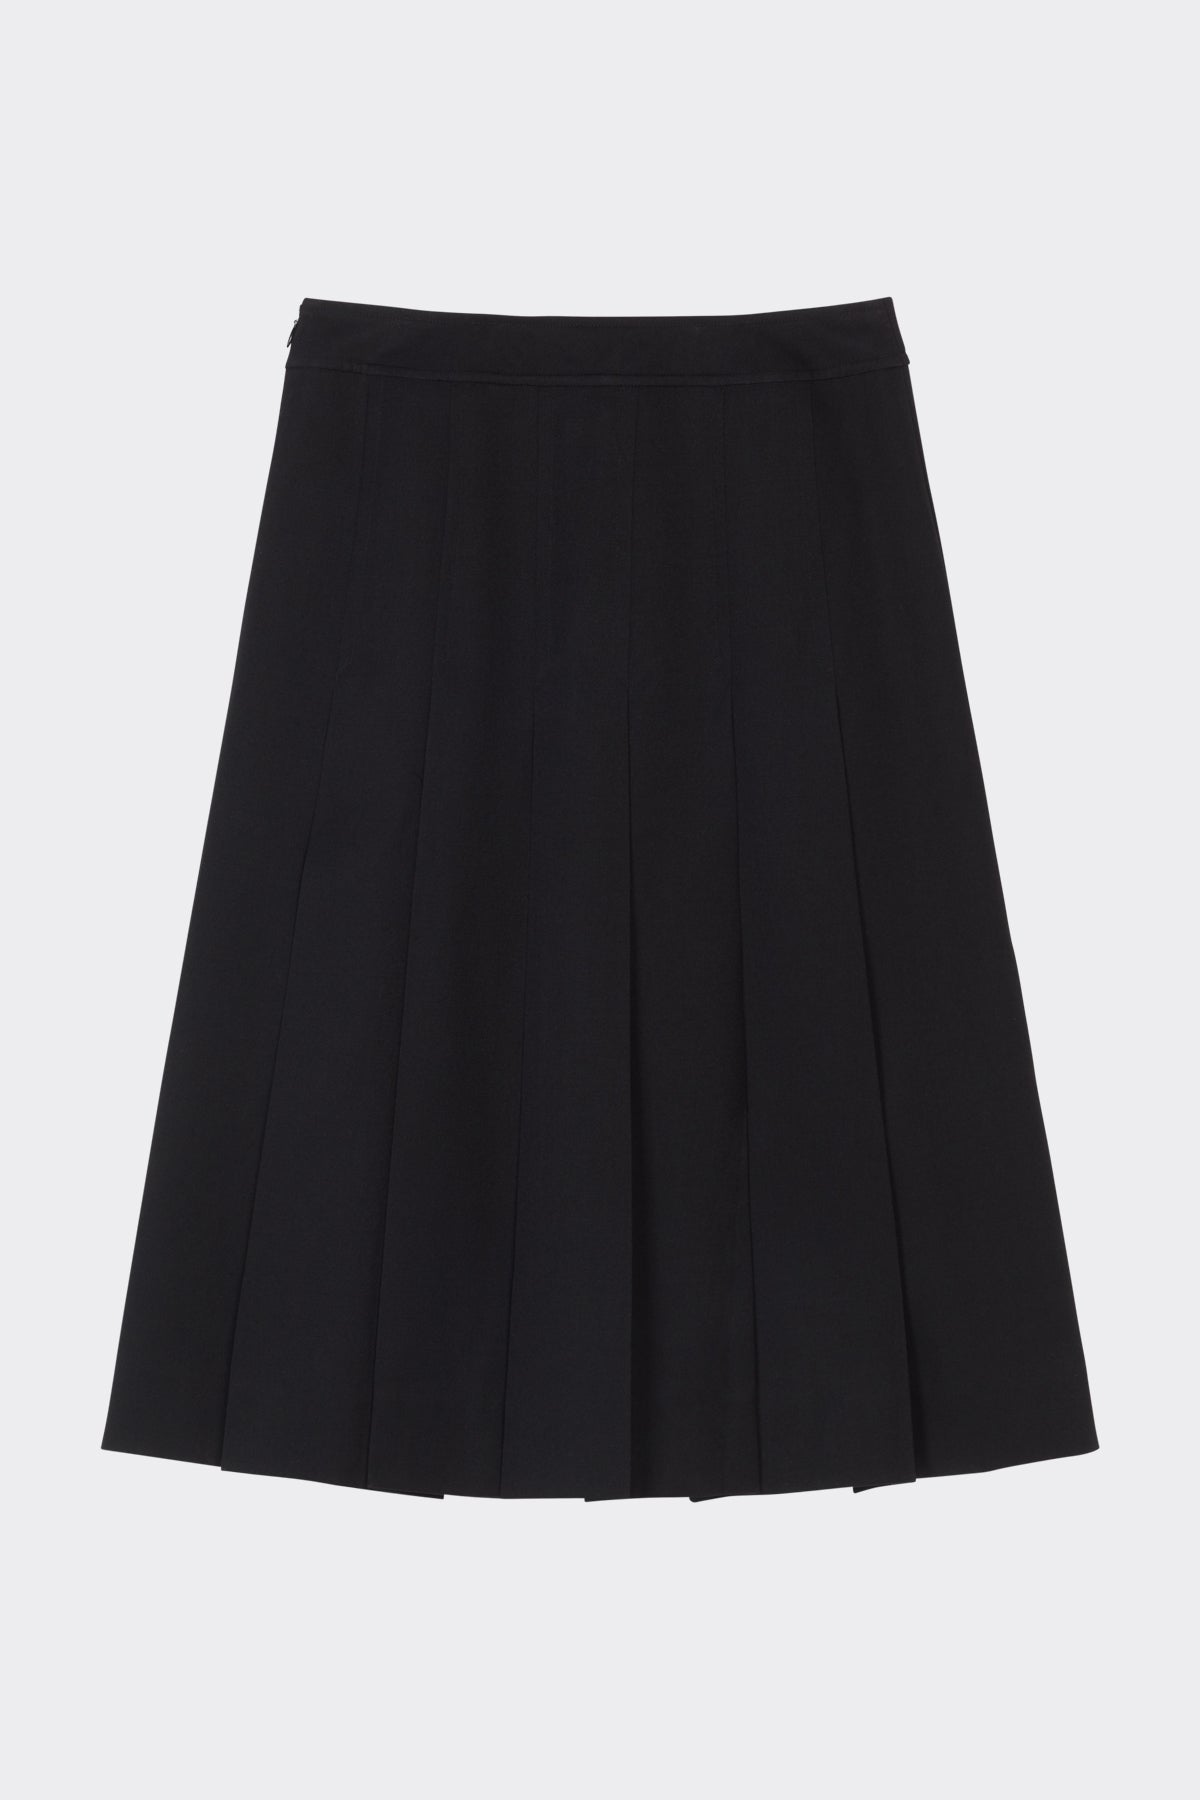 Cheri Skirt in Black| Noon by Noor